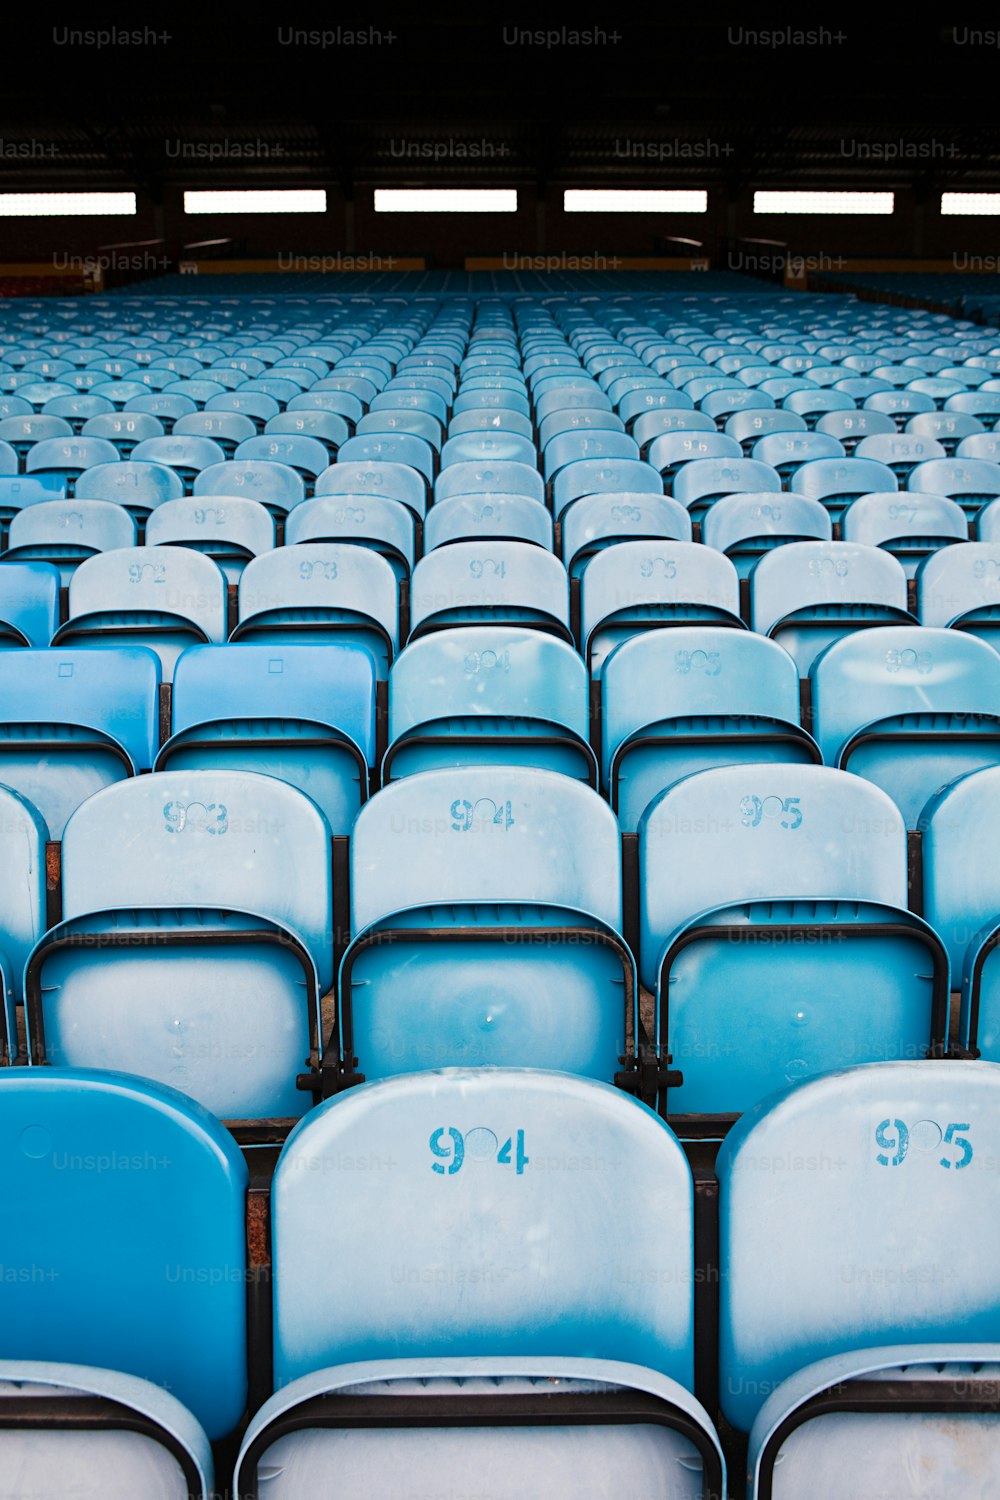 Filas de asientos azules y blancos en un estadio